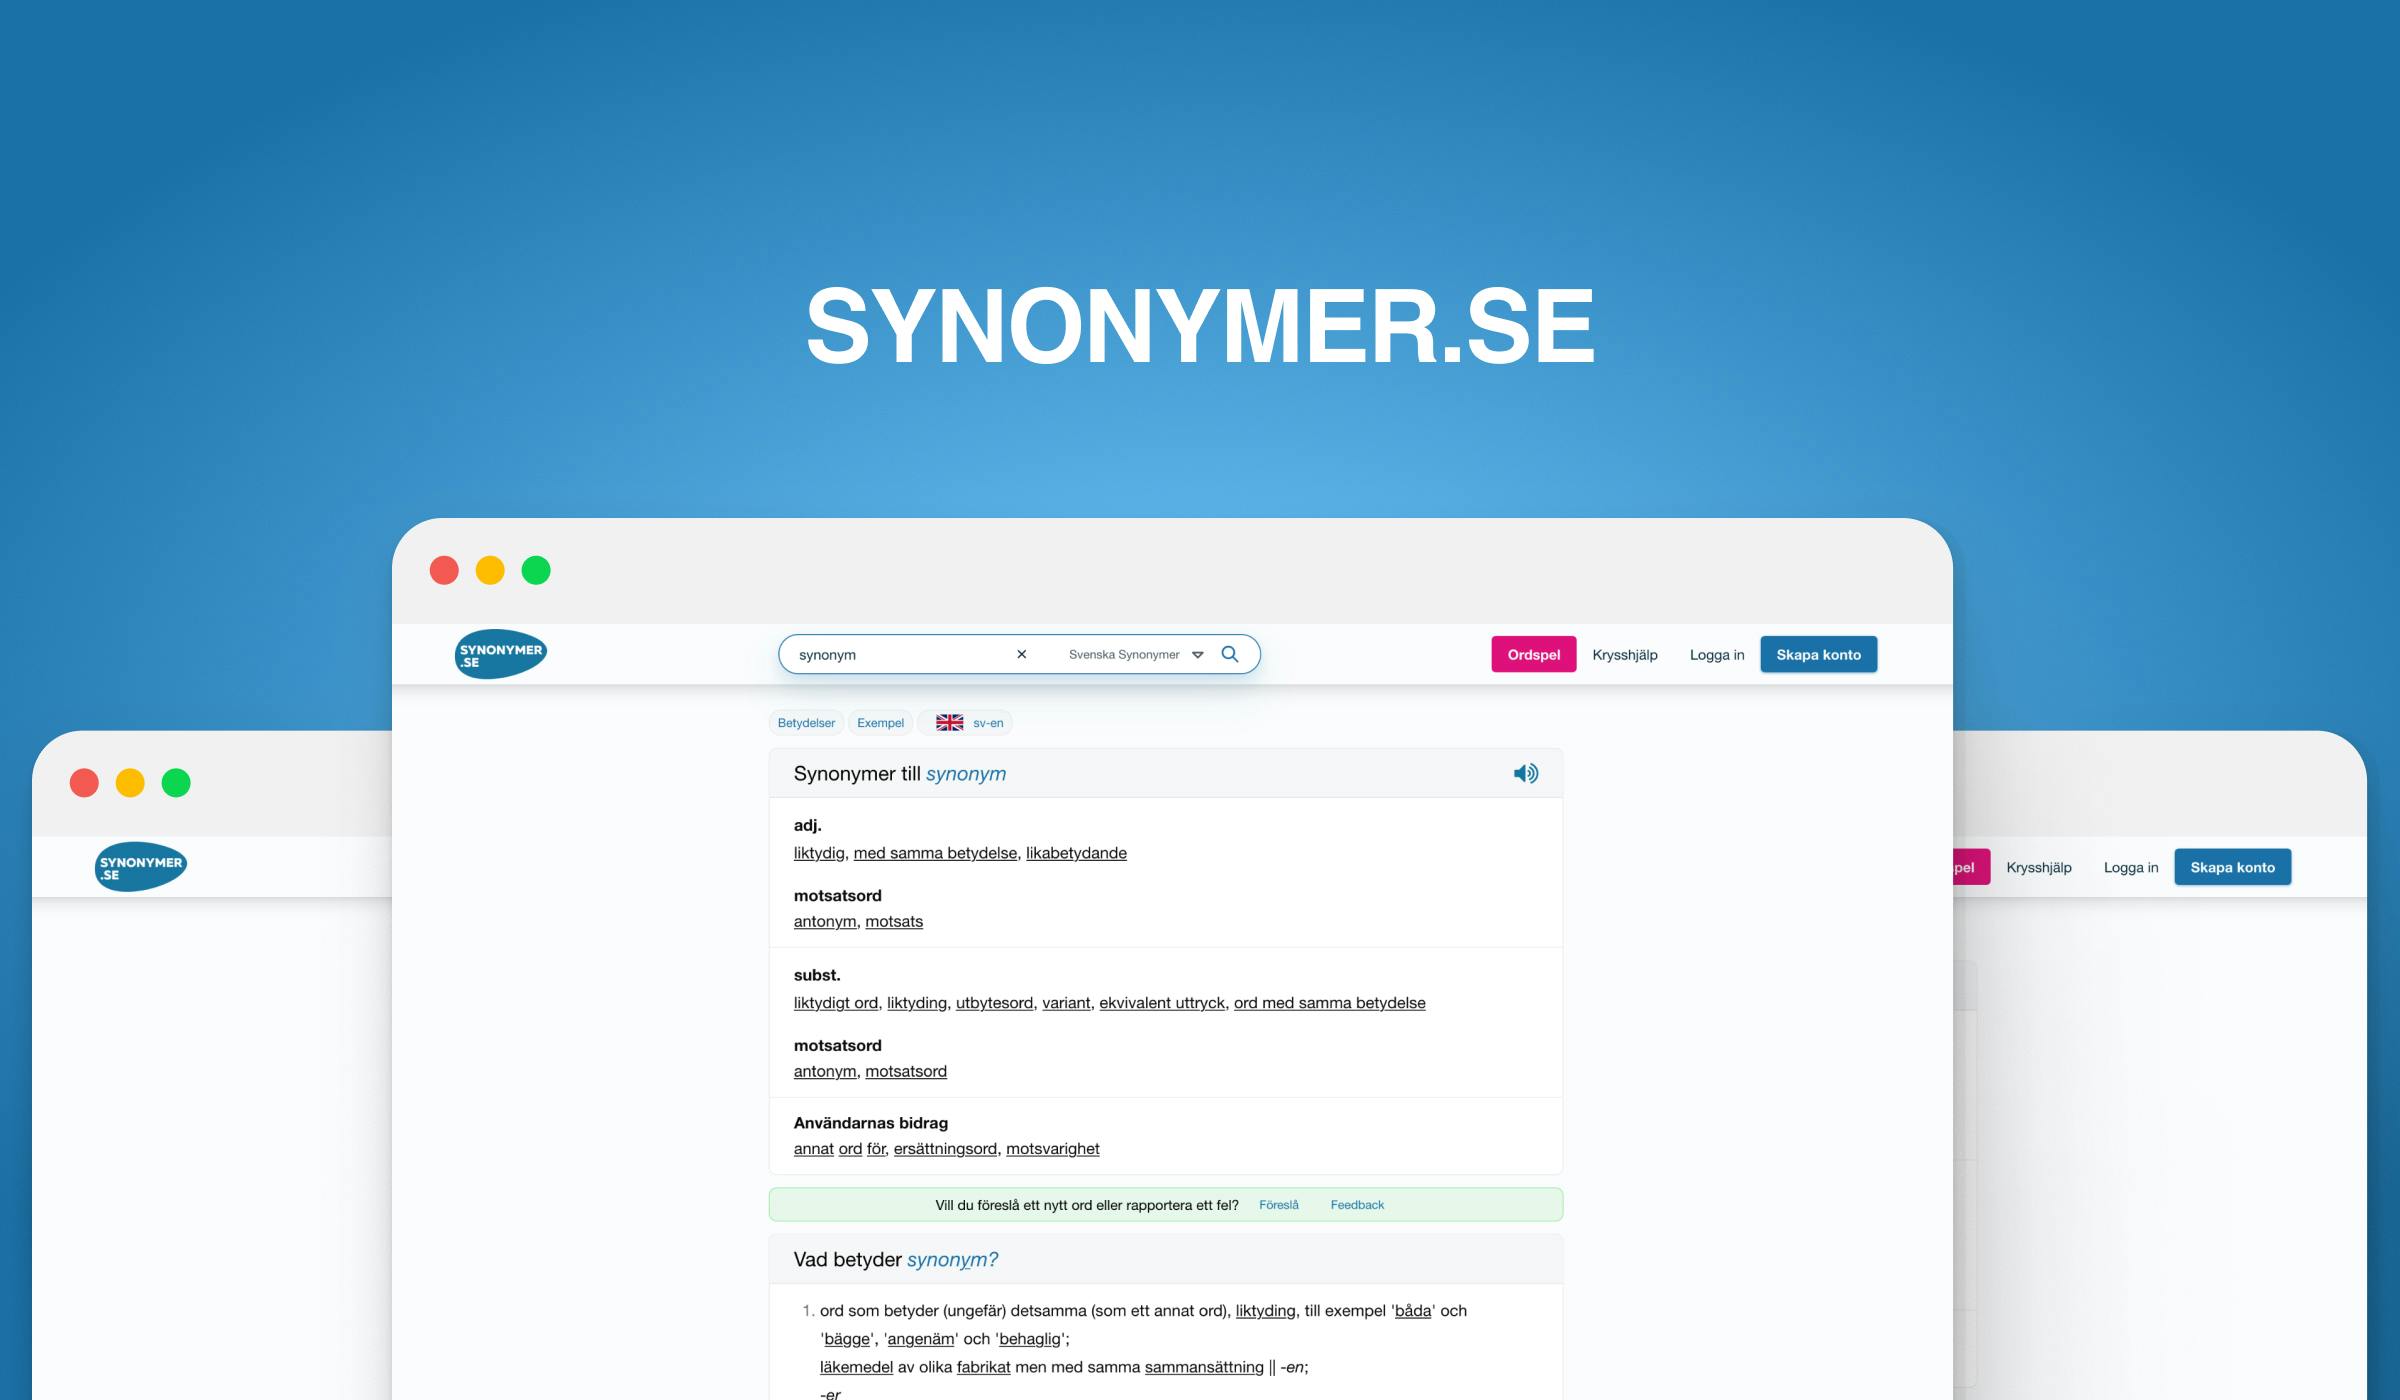 Case | Synonymer